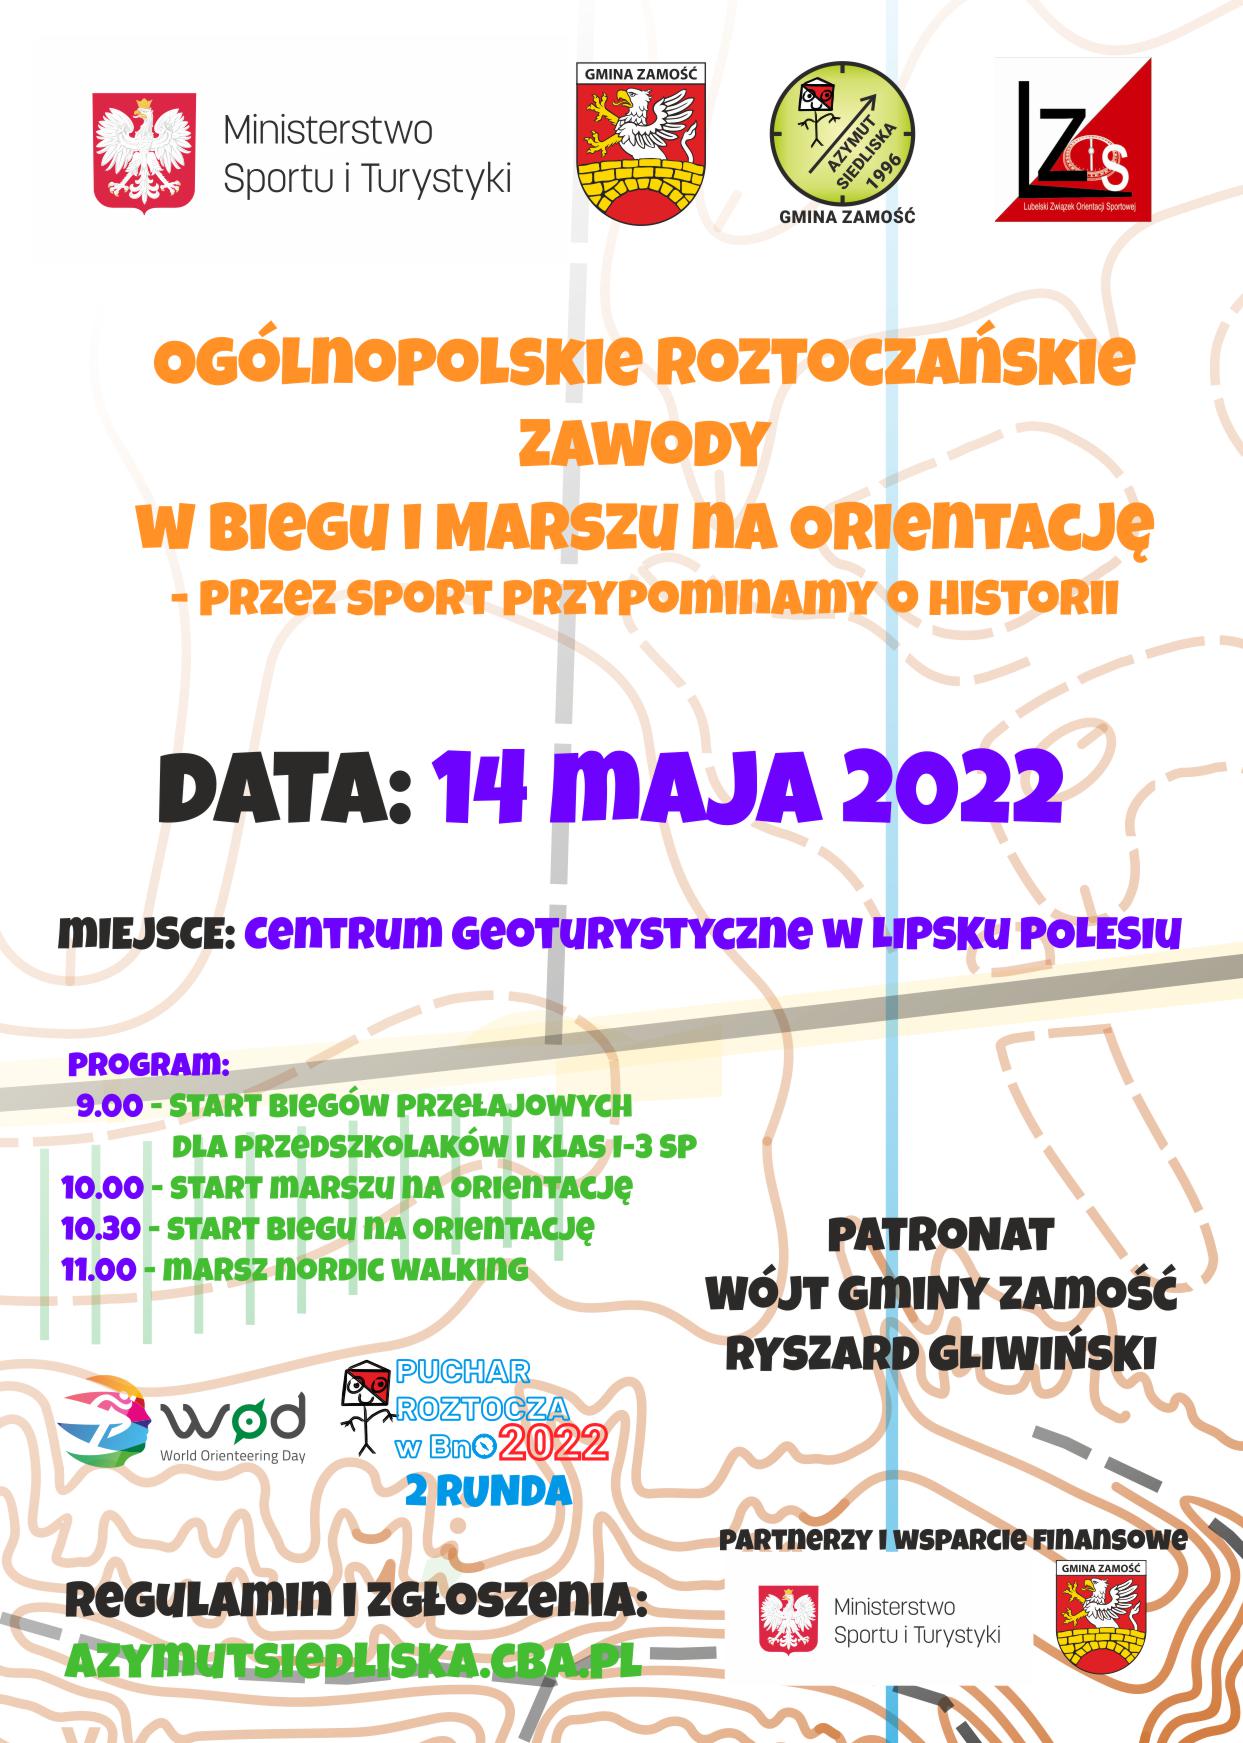 plakat roztoczanskie zawody orientacja 2022 2 Ogólnopolskie Roztoczańskie Zawody w Biegu i Marszu na Orientację